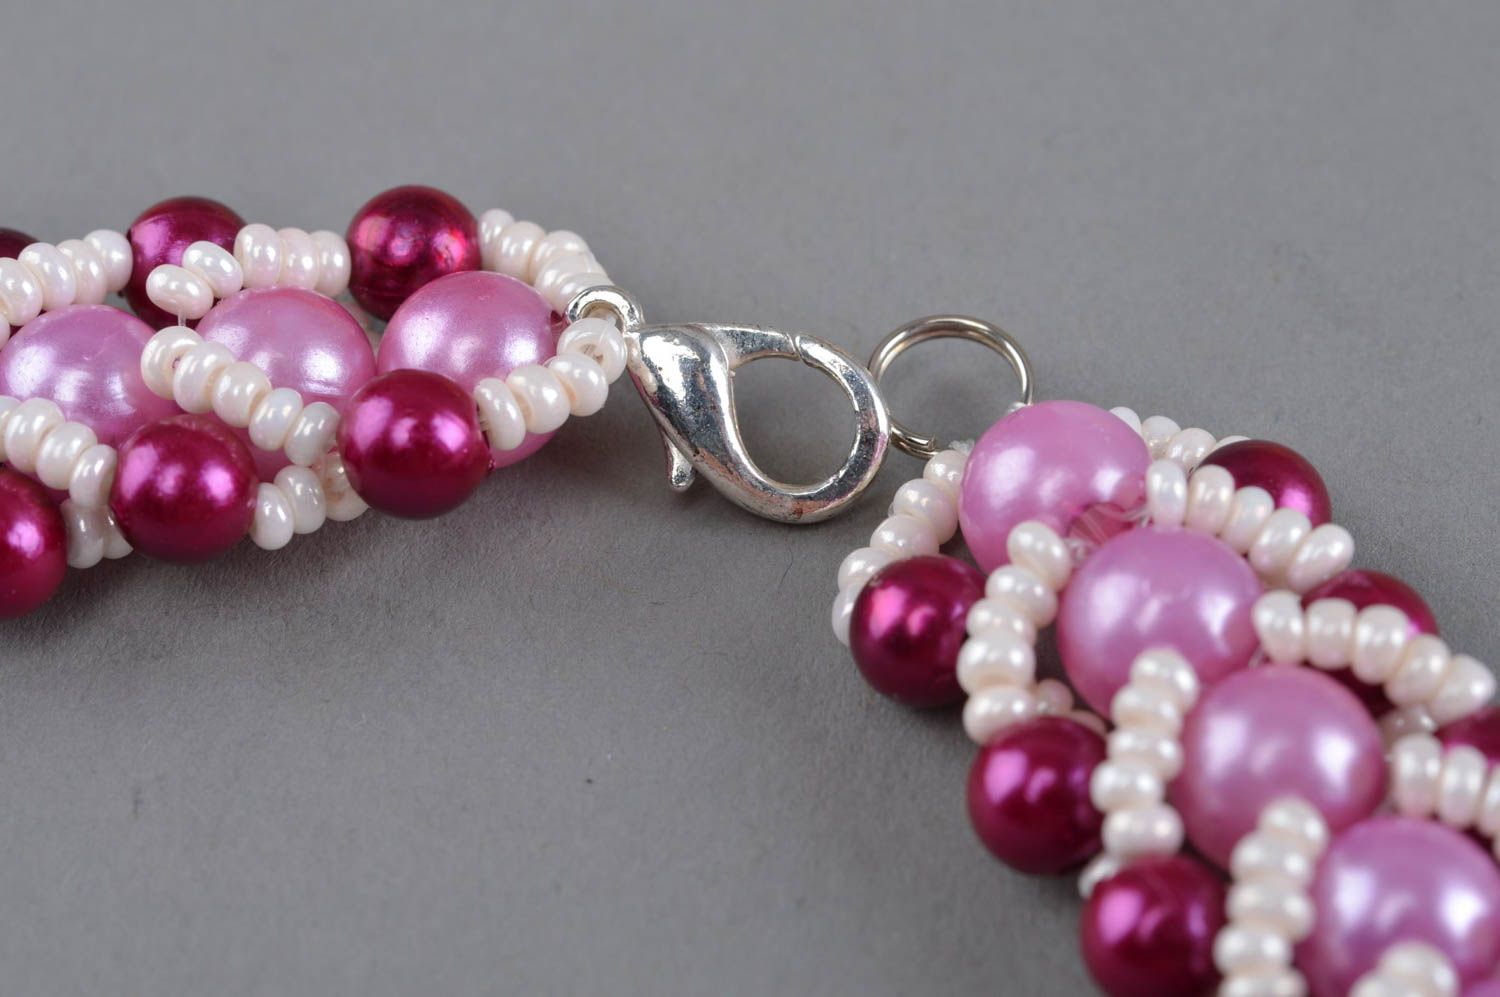 Ожерелье из бисера и бусин ручной работы красивое авторское в розовых тонах фото 4